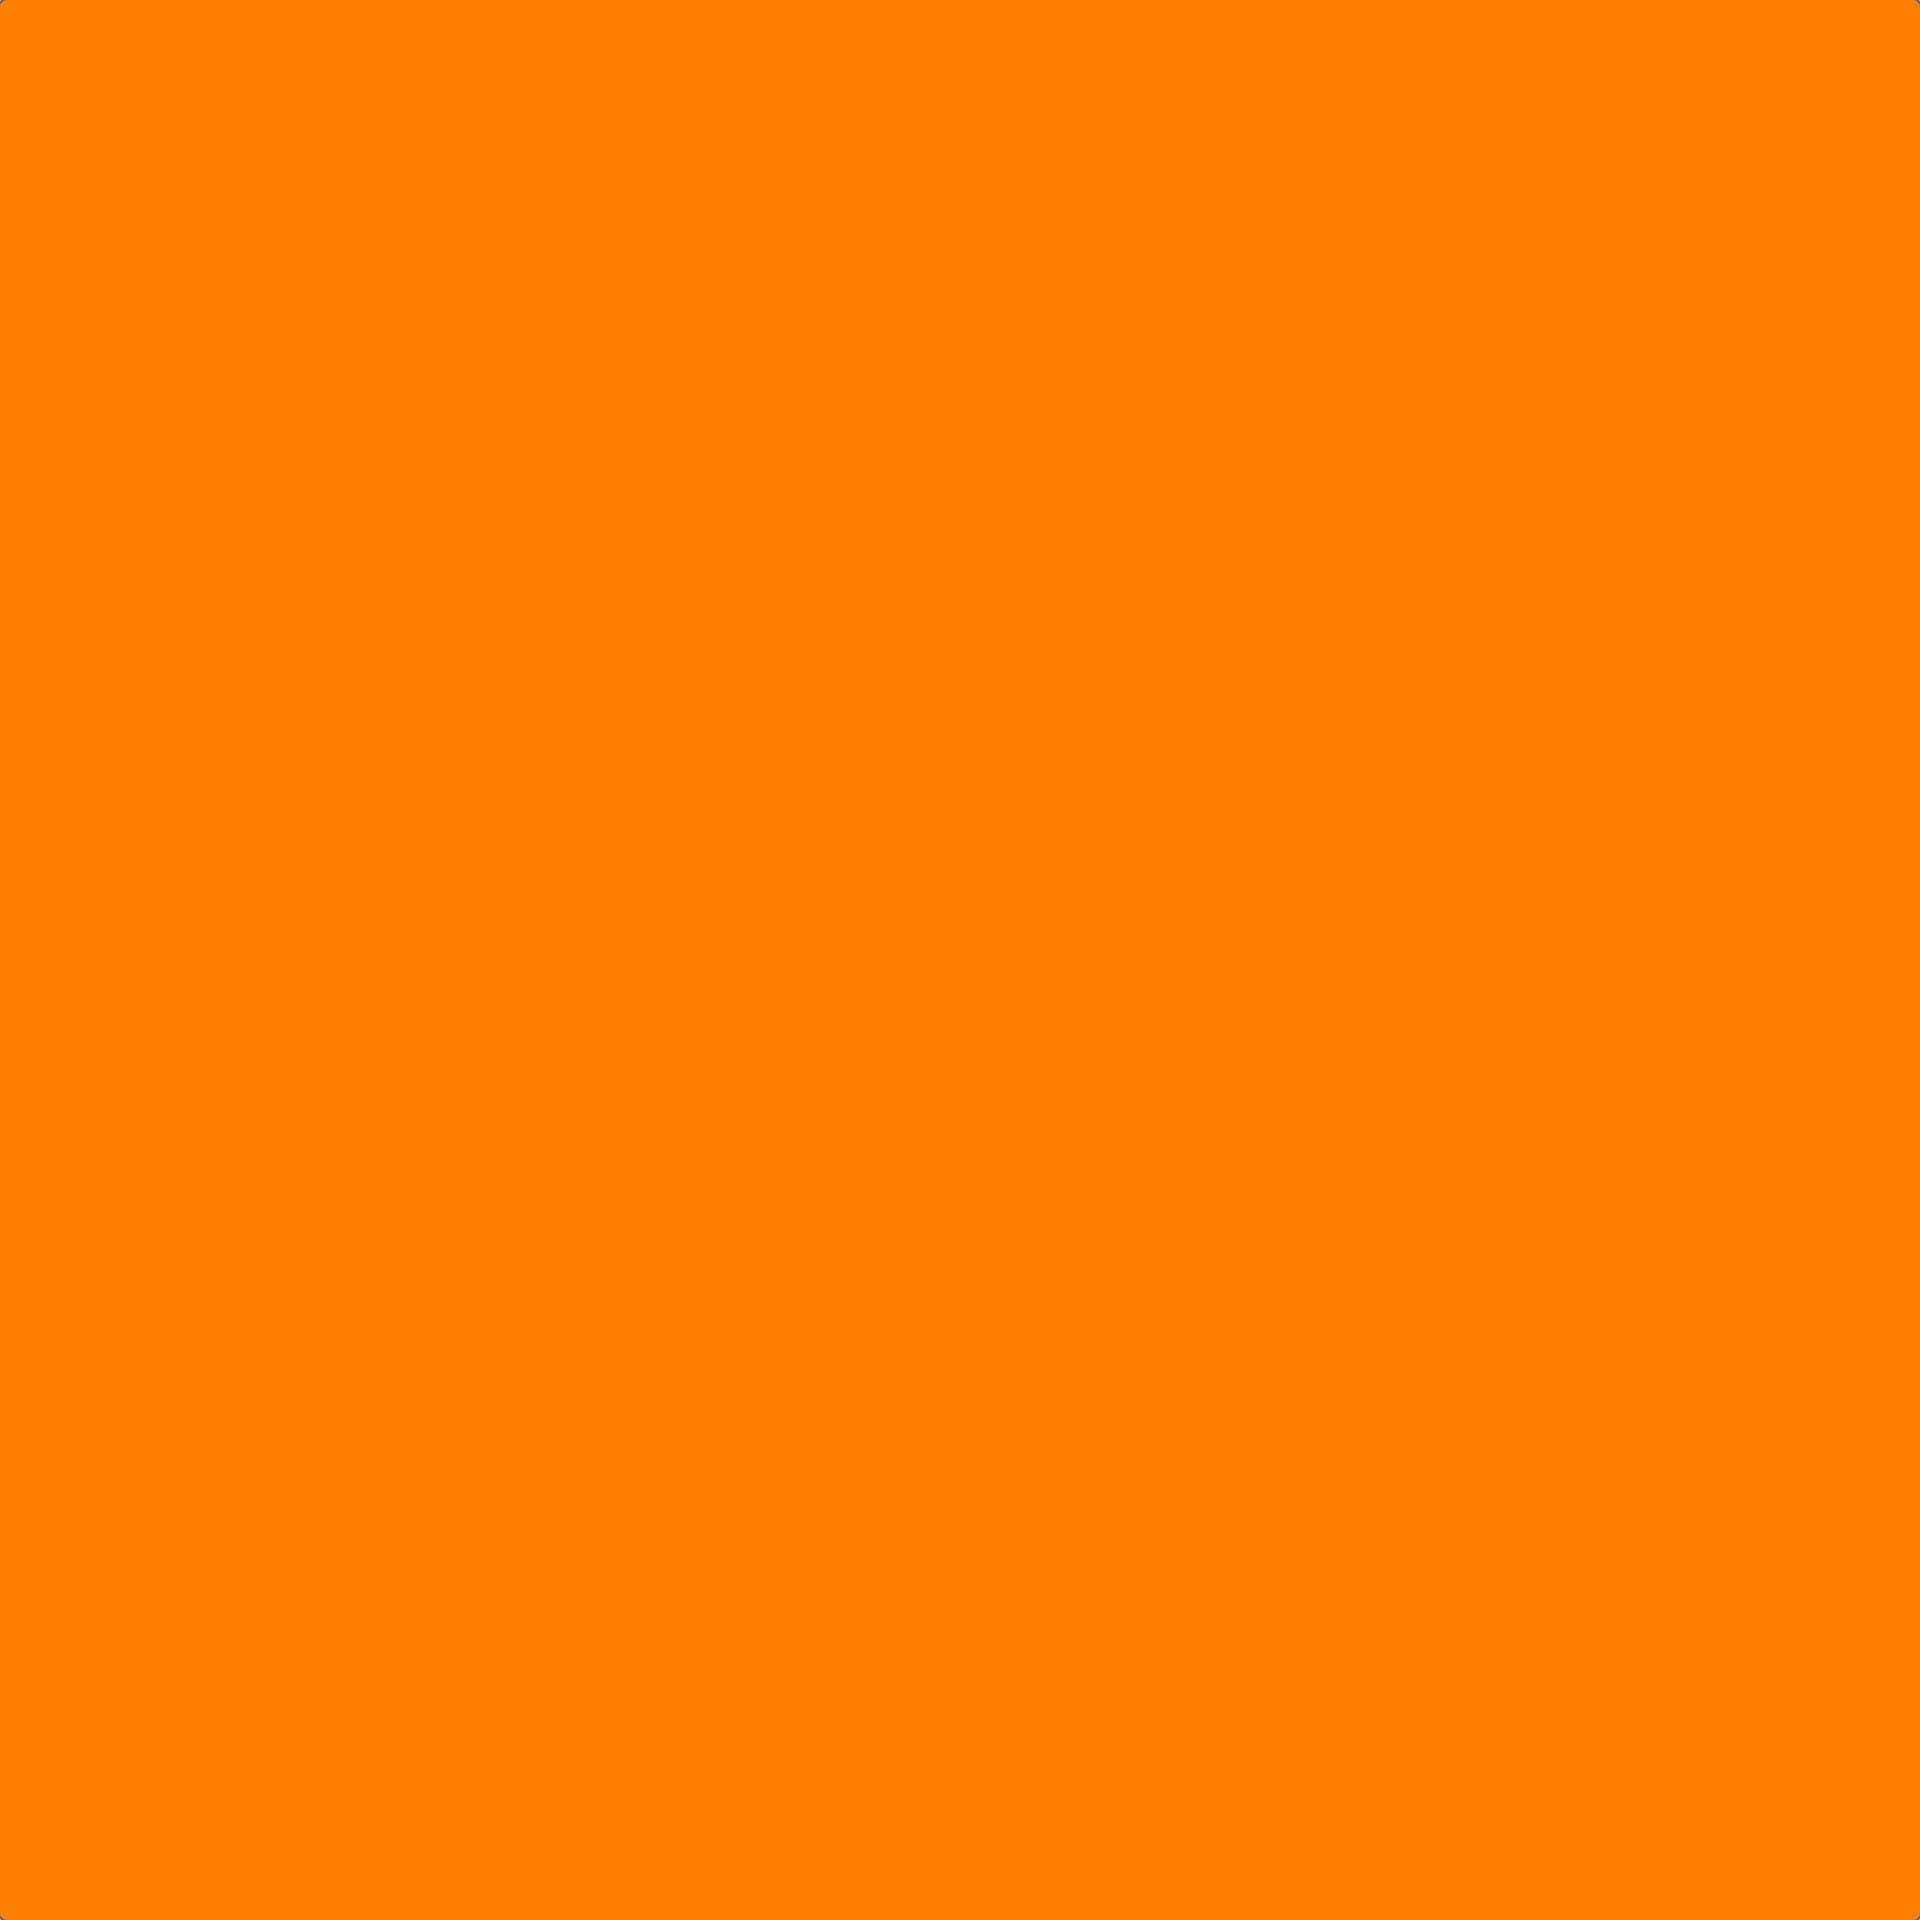 Uncuadrado De Color Naranja Sobre Un Fondo Blanco Fondo de pantalla